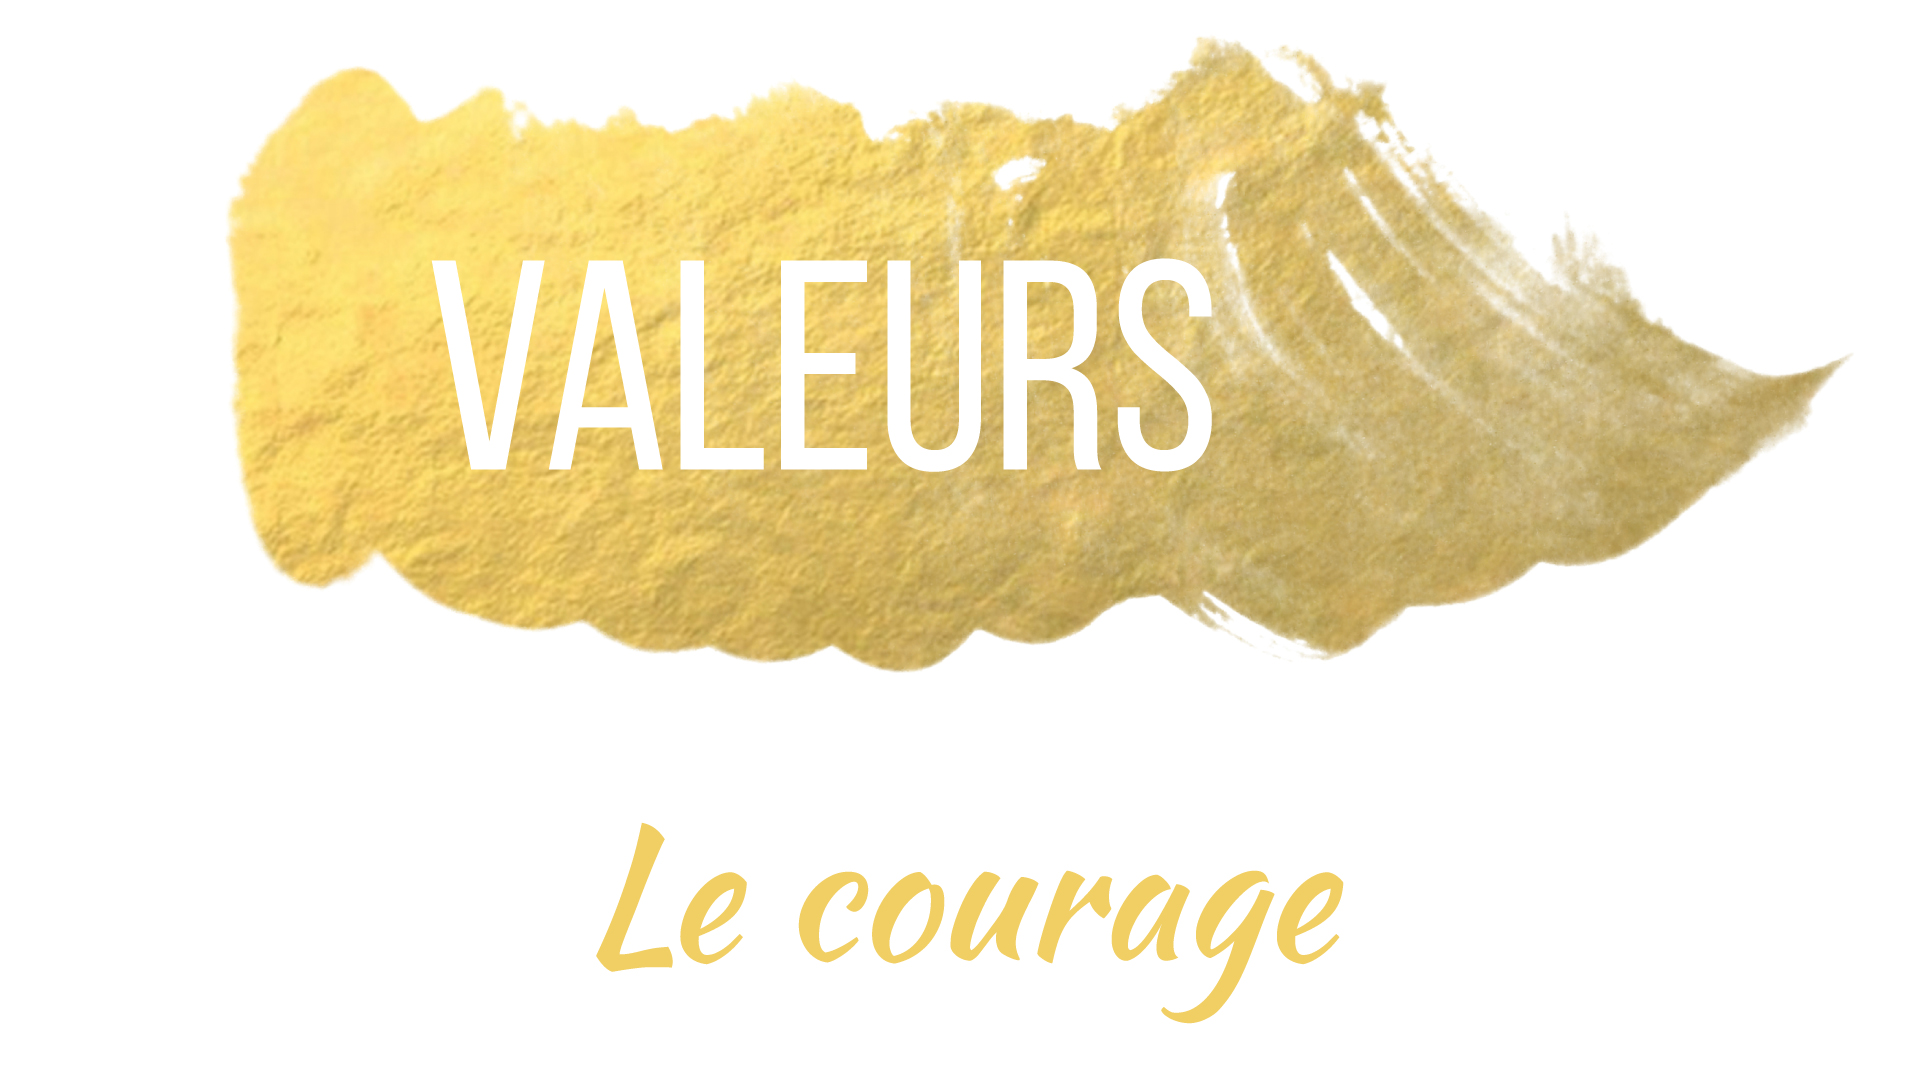 Valeurs - Le courage